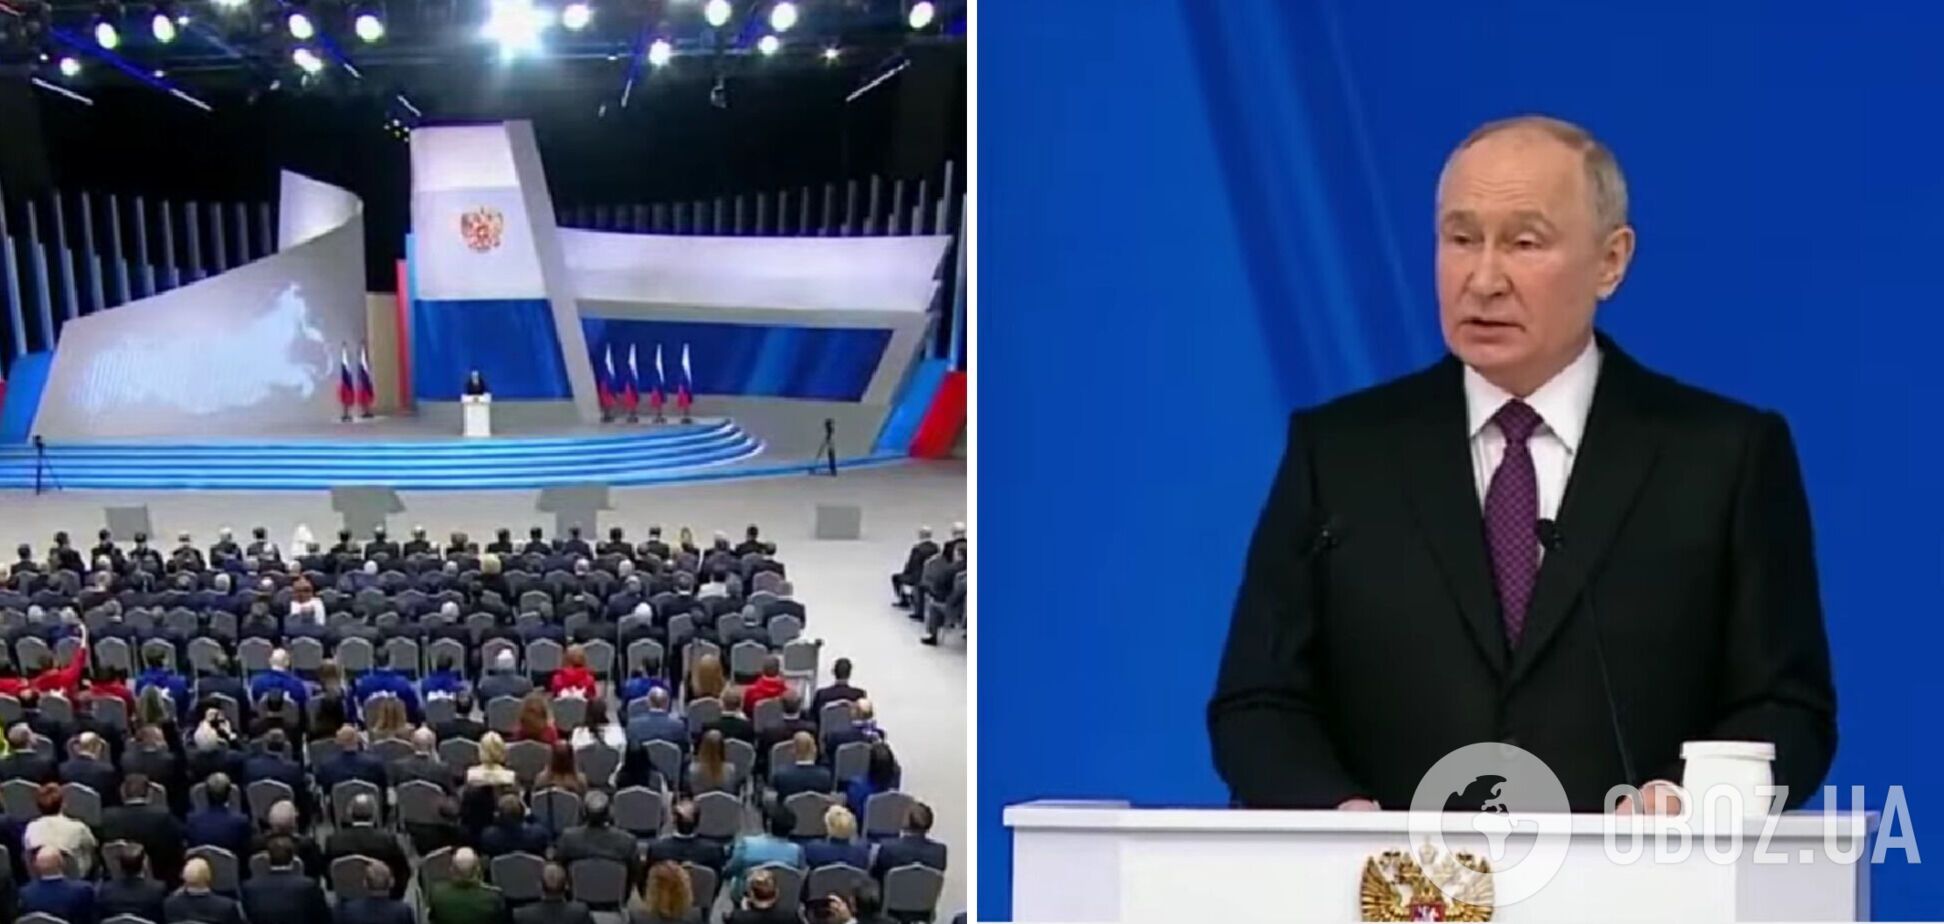 'Это вдохновляет': Путин в послании Федеральному собранию сделал циничное заявление об Украине и заговорил о 'справедливой борьбе'